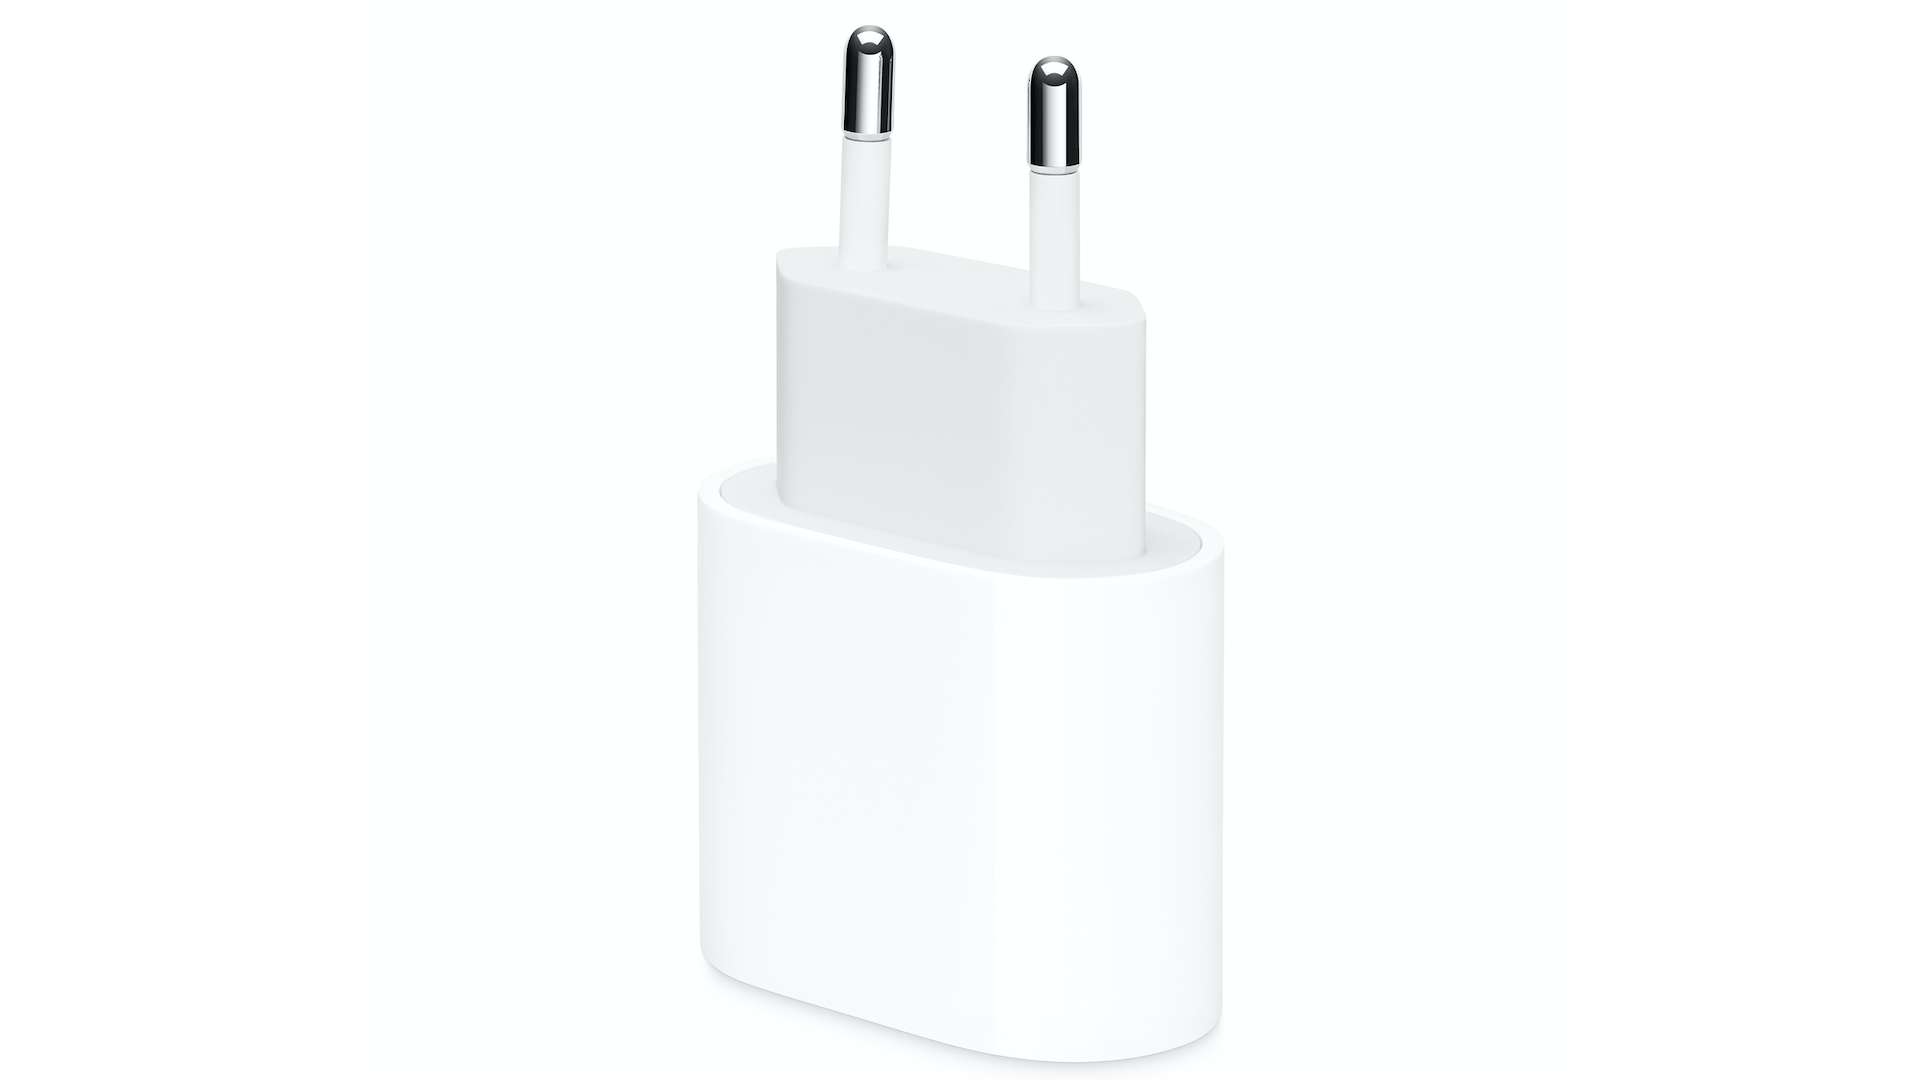 Chargeur rapide pour iPhone – Câble USB C vers Lightning certifié MFi – 20  W Type-C – Chargeur rapide bloc de charge mural super rapide compatible